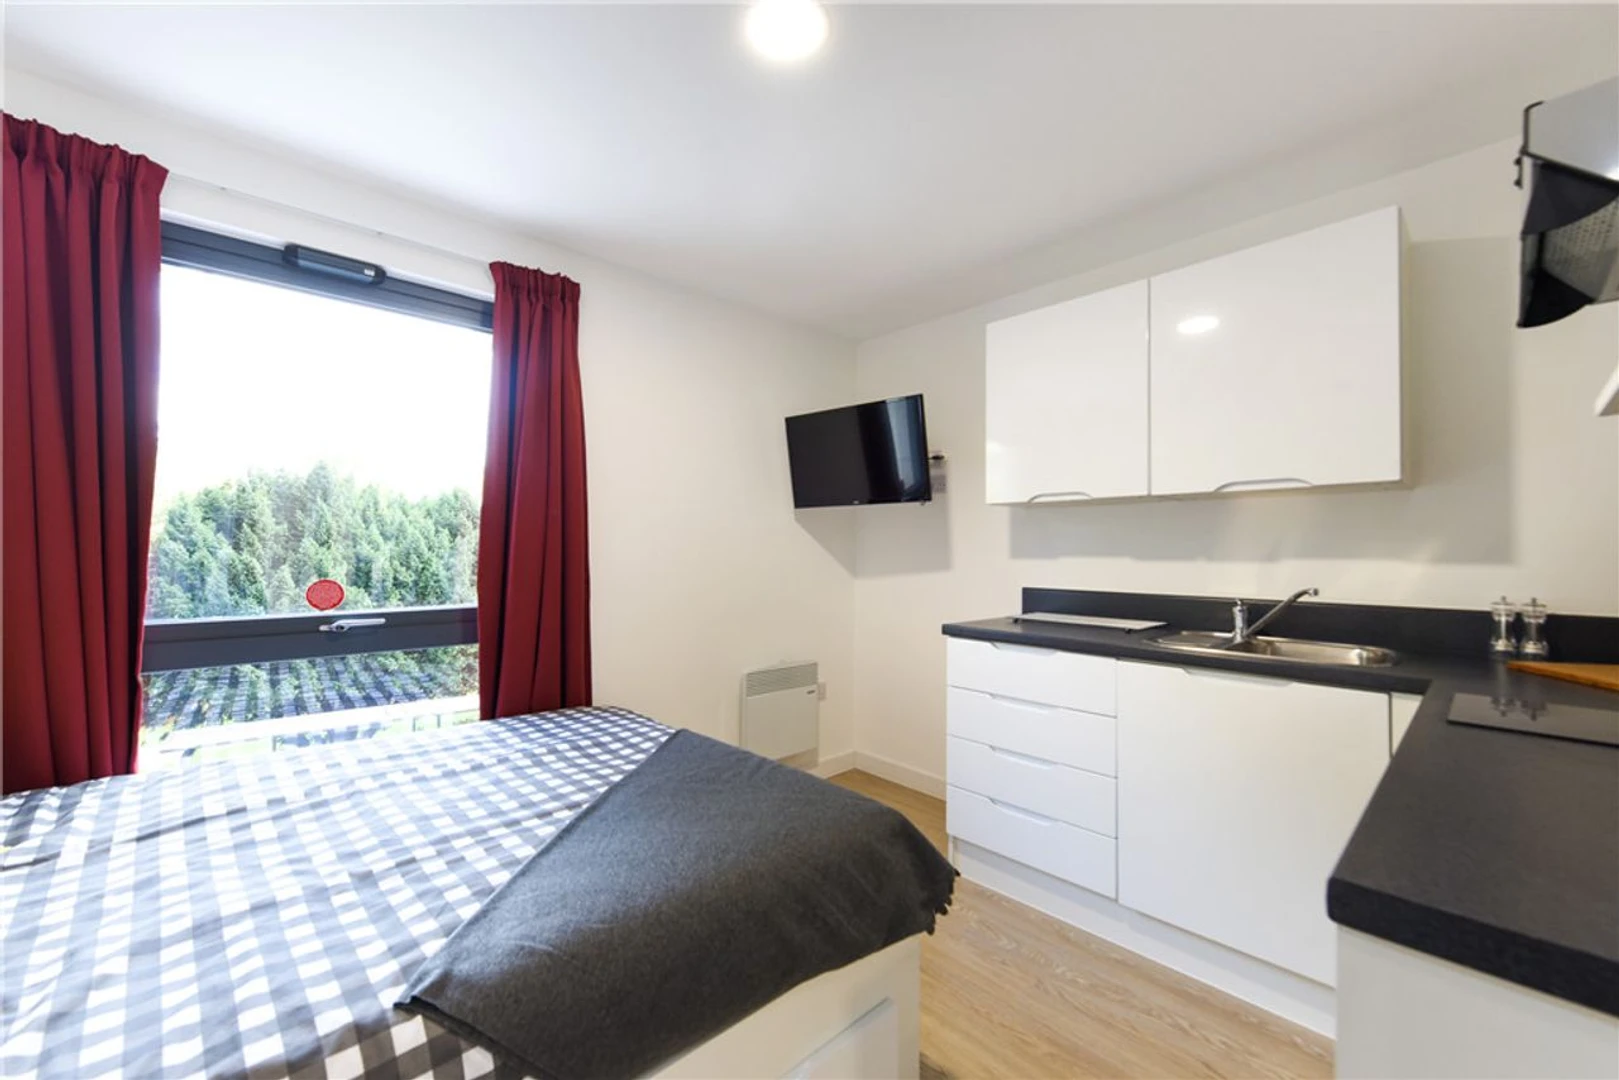 Habitación en alquiler con cama doble Southampton